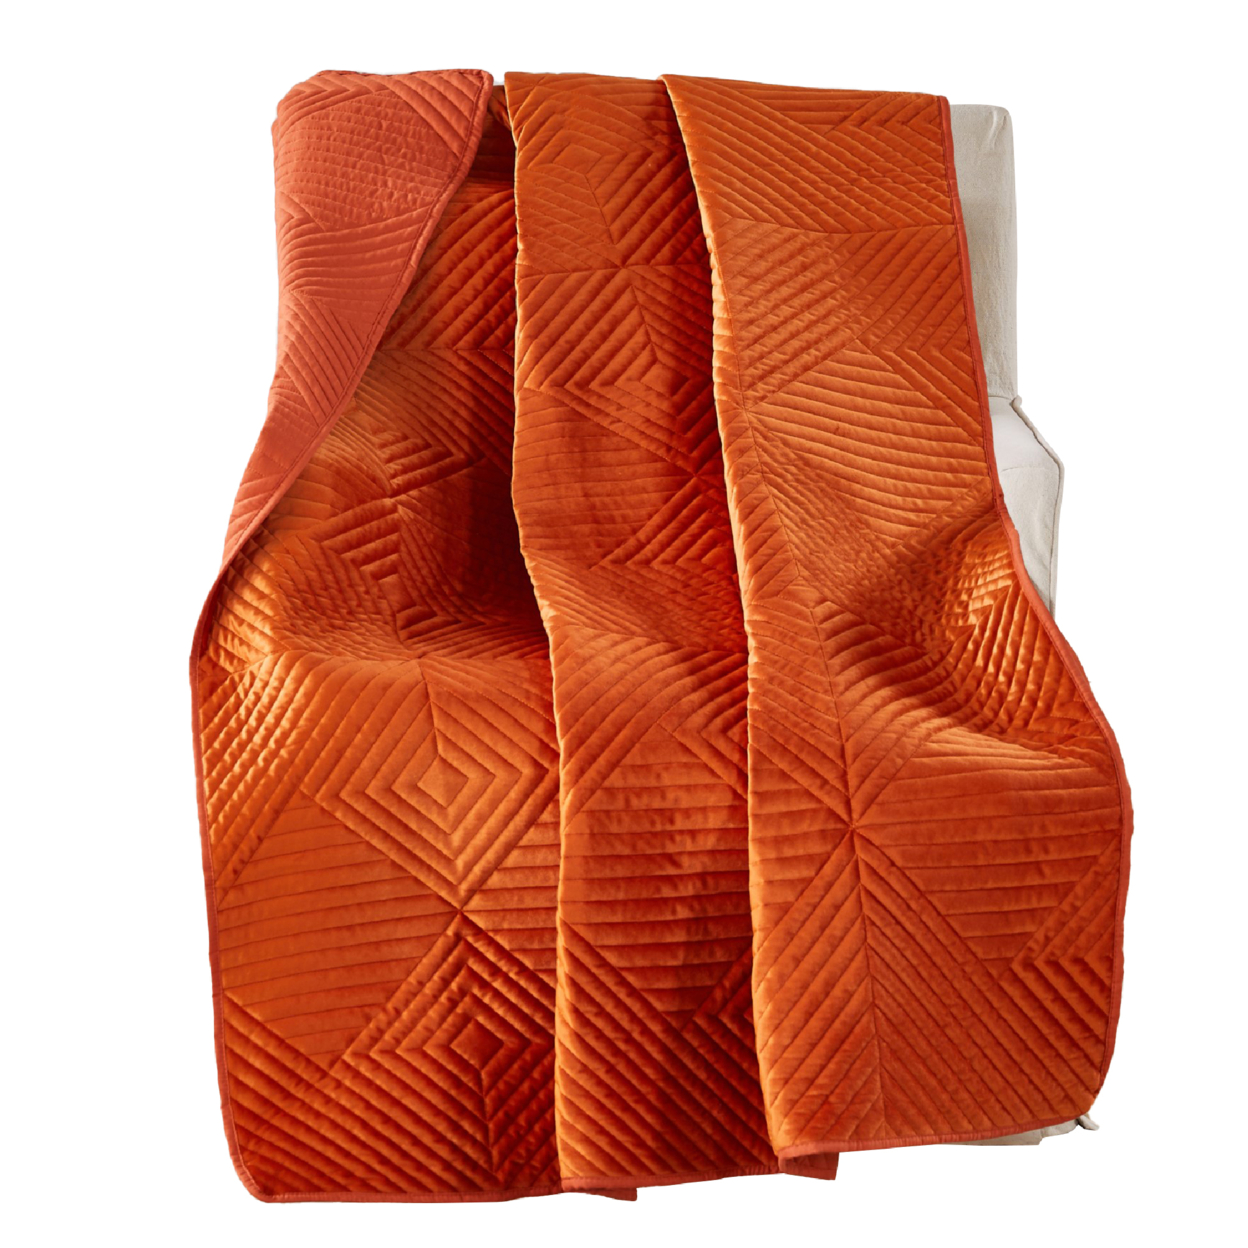 Rio 60 Inch Throw Blanket, Diamond Stitch Quilting, Orange Dutch Velvet- Saltoro Sherpi